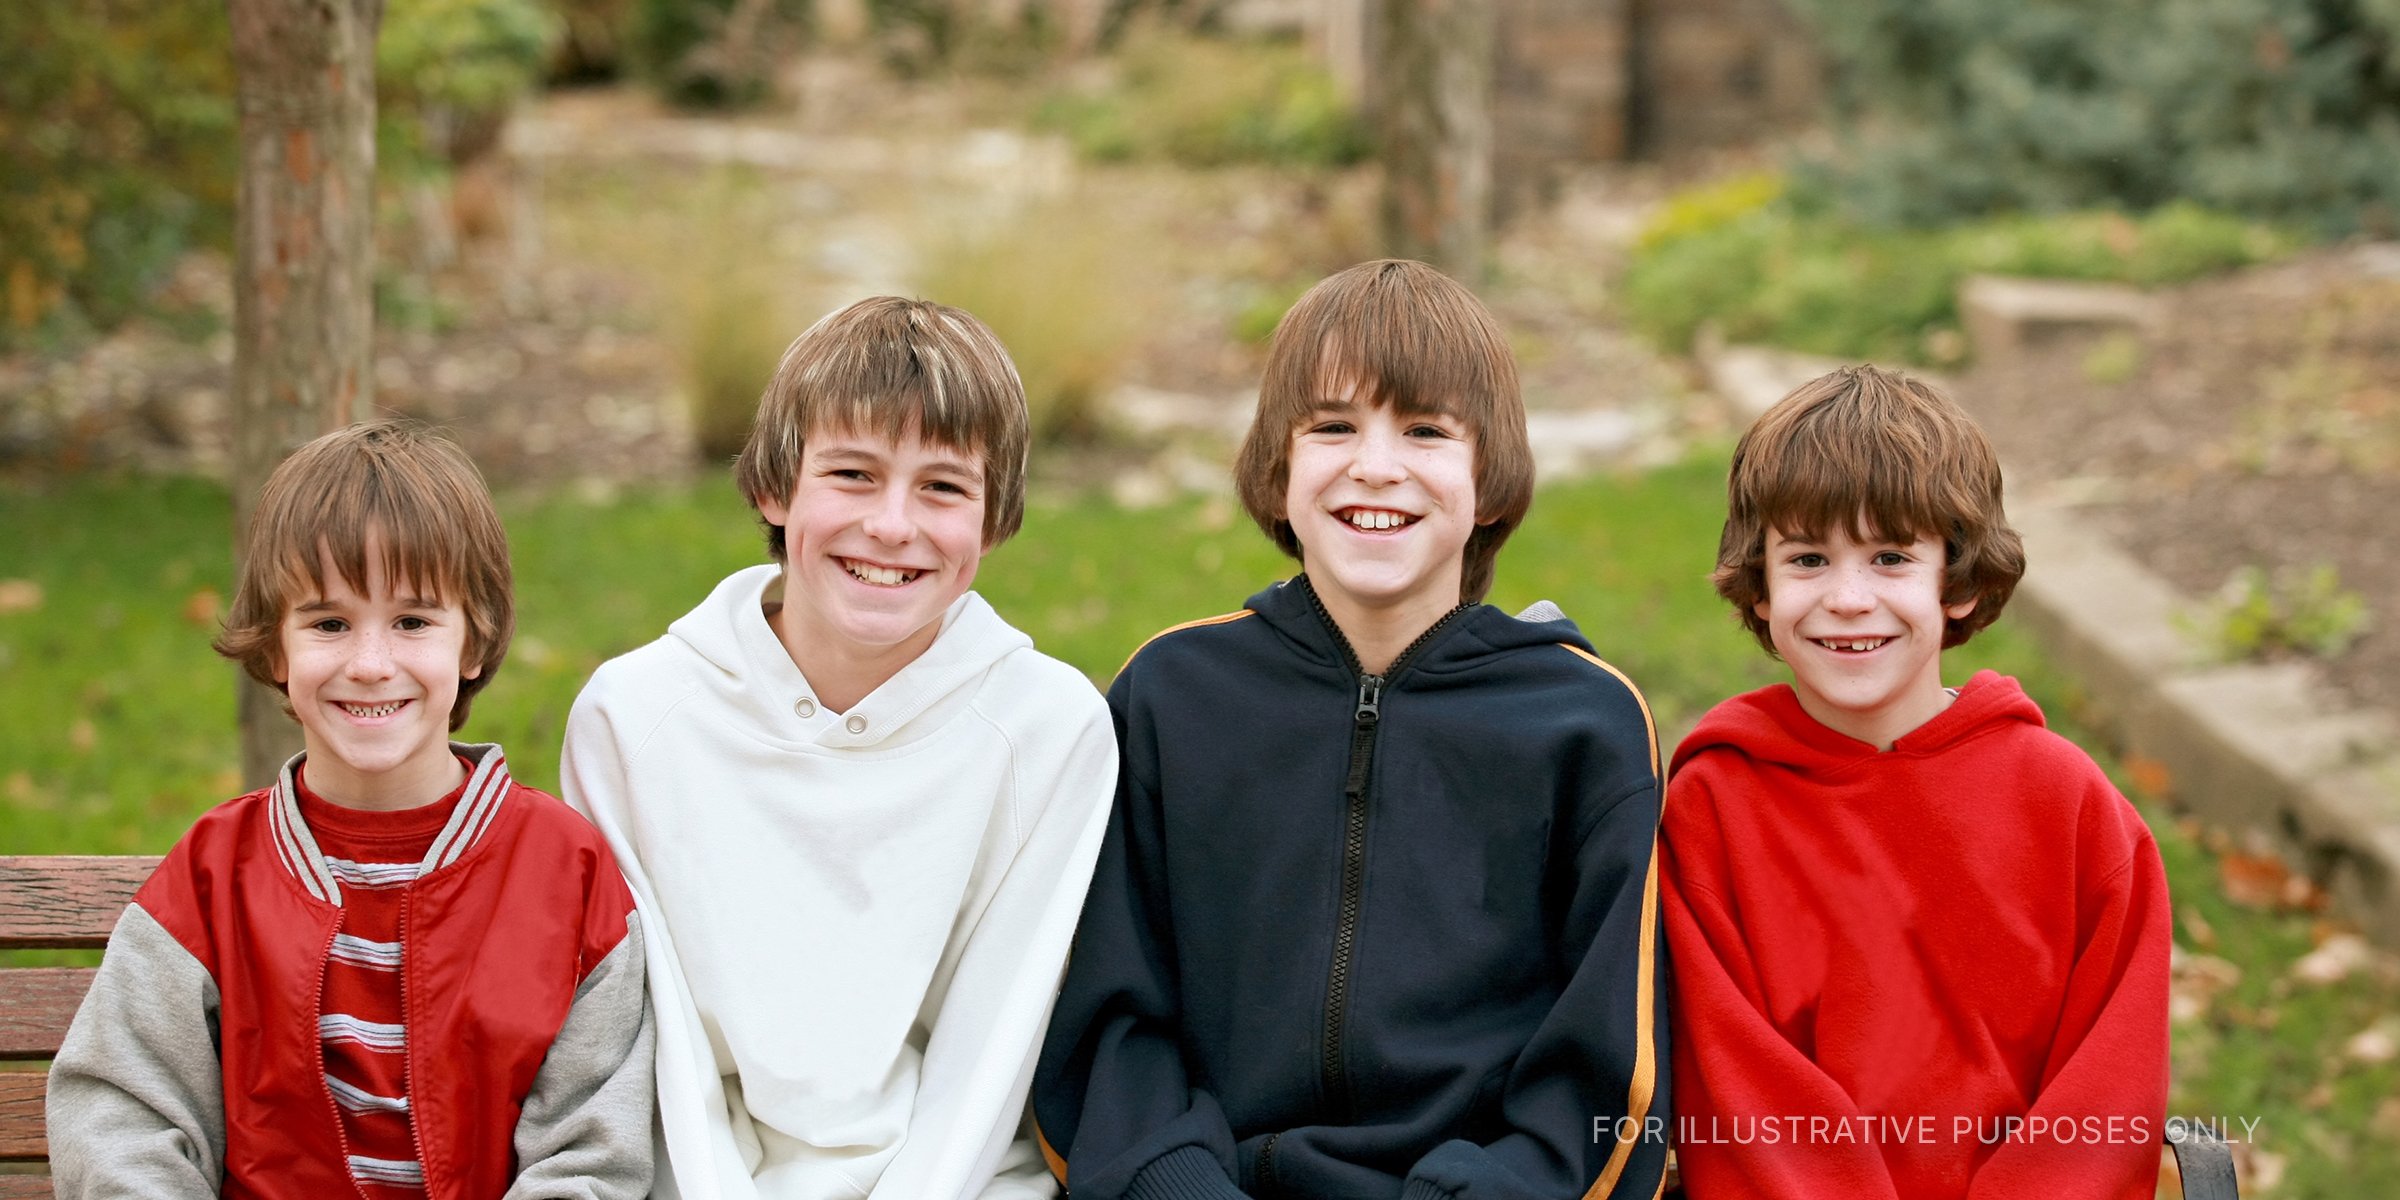 Vier Jungen lächeln für das Foto. | Quelle: Shutterstock